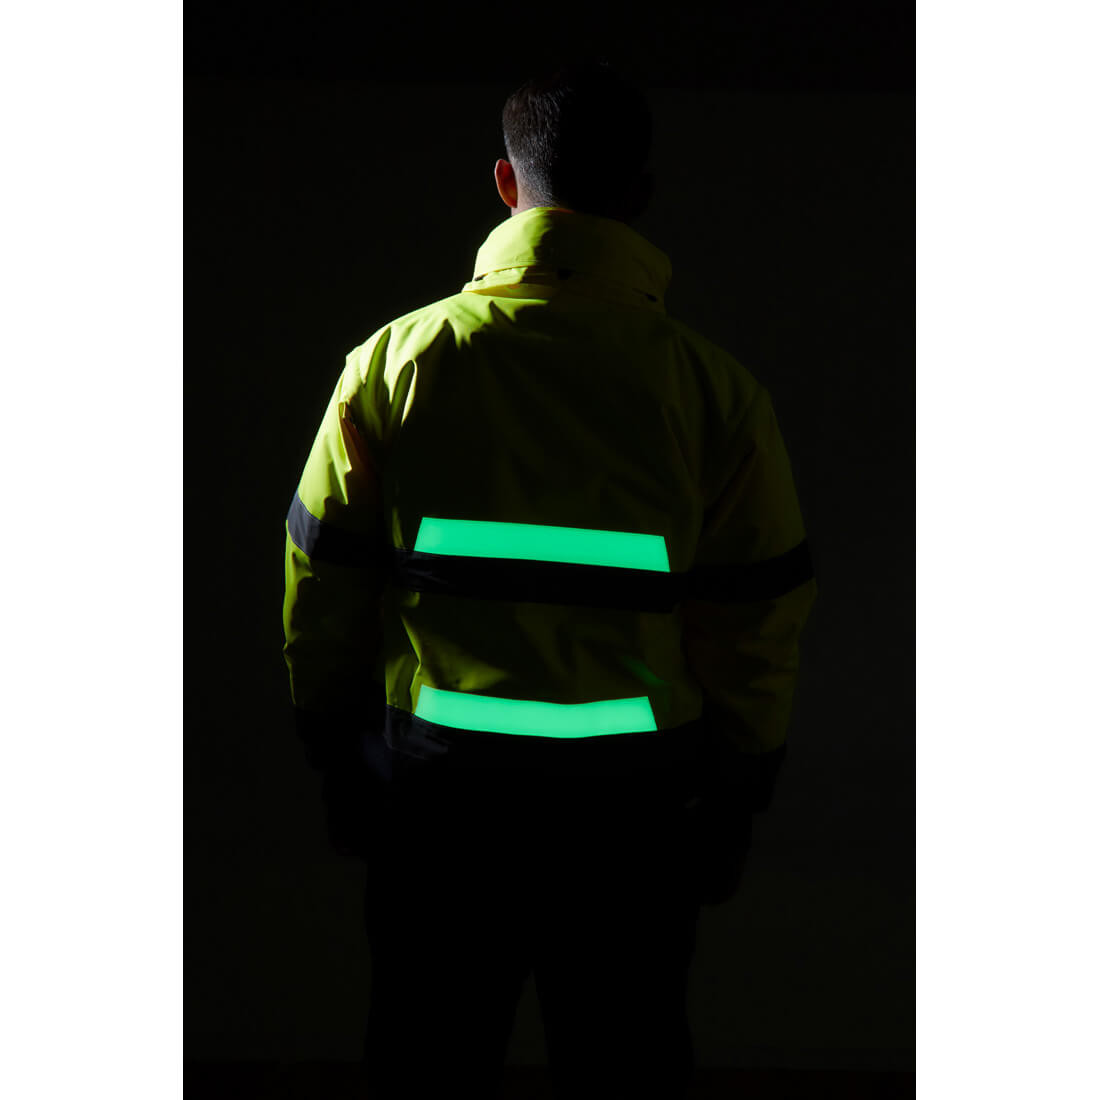 Glowtex 3-in-1 Jacket - Safetywear